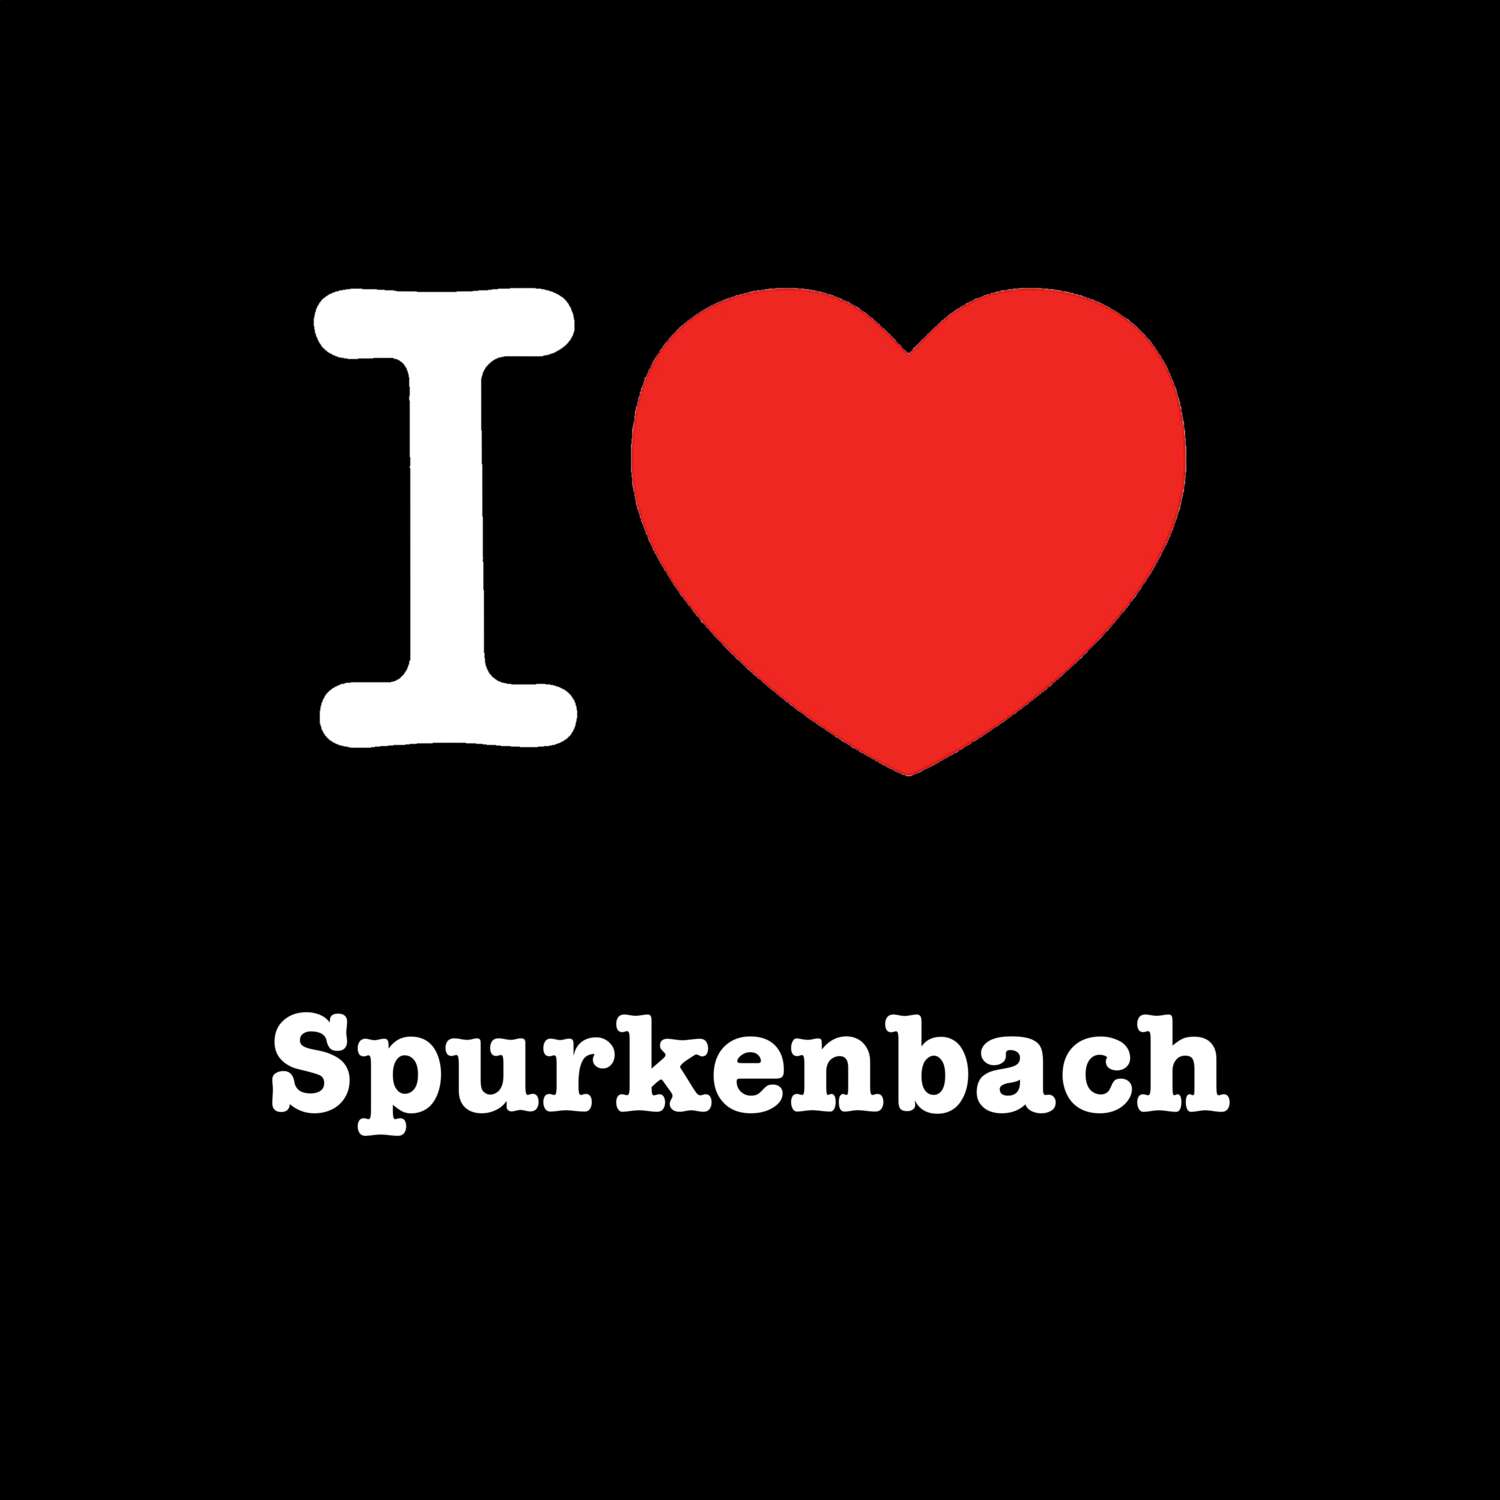 Spurkenbach T-Shirt »I love«